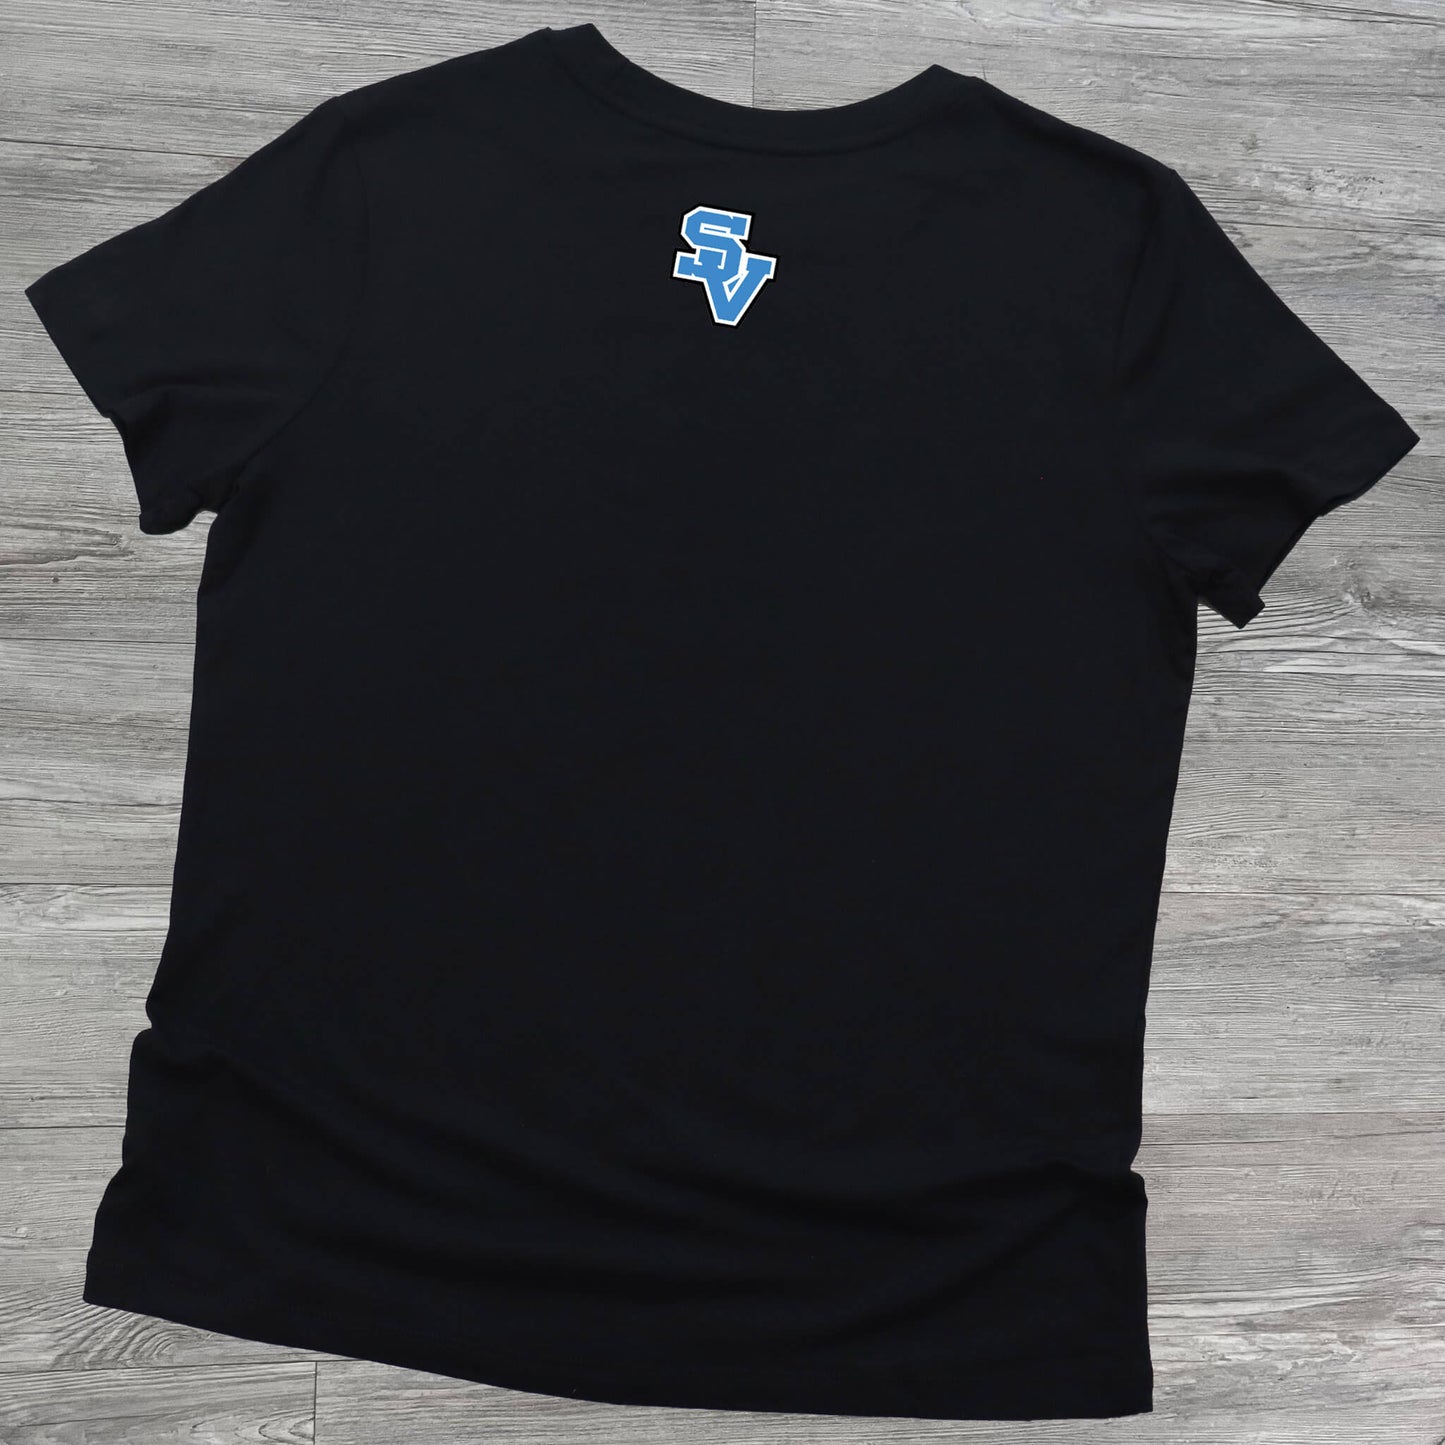 Black Ehrman Crest Middle School tshirt back with SV logo